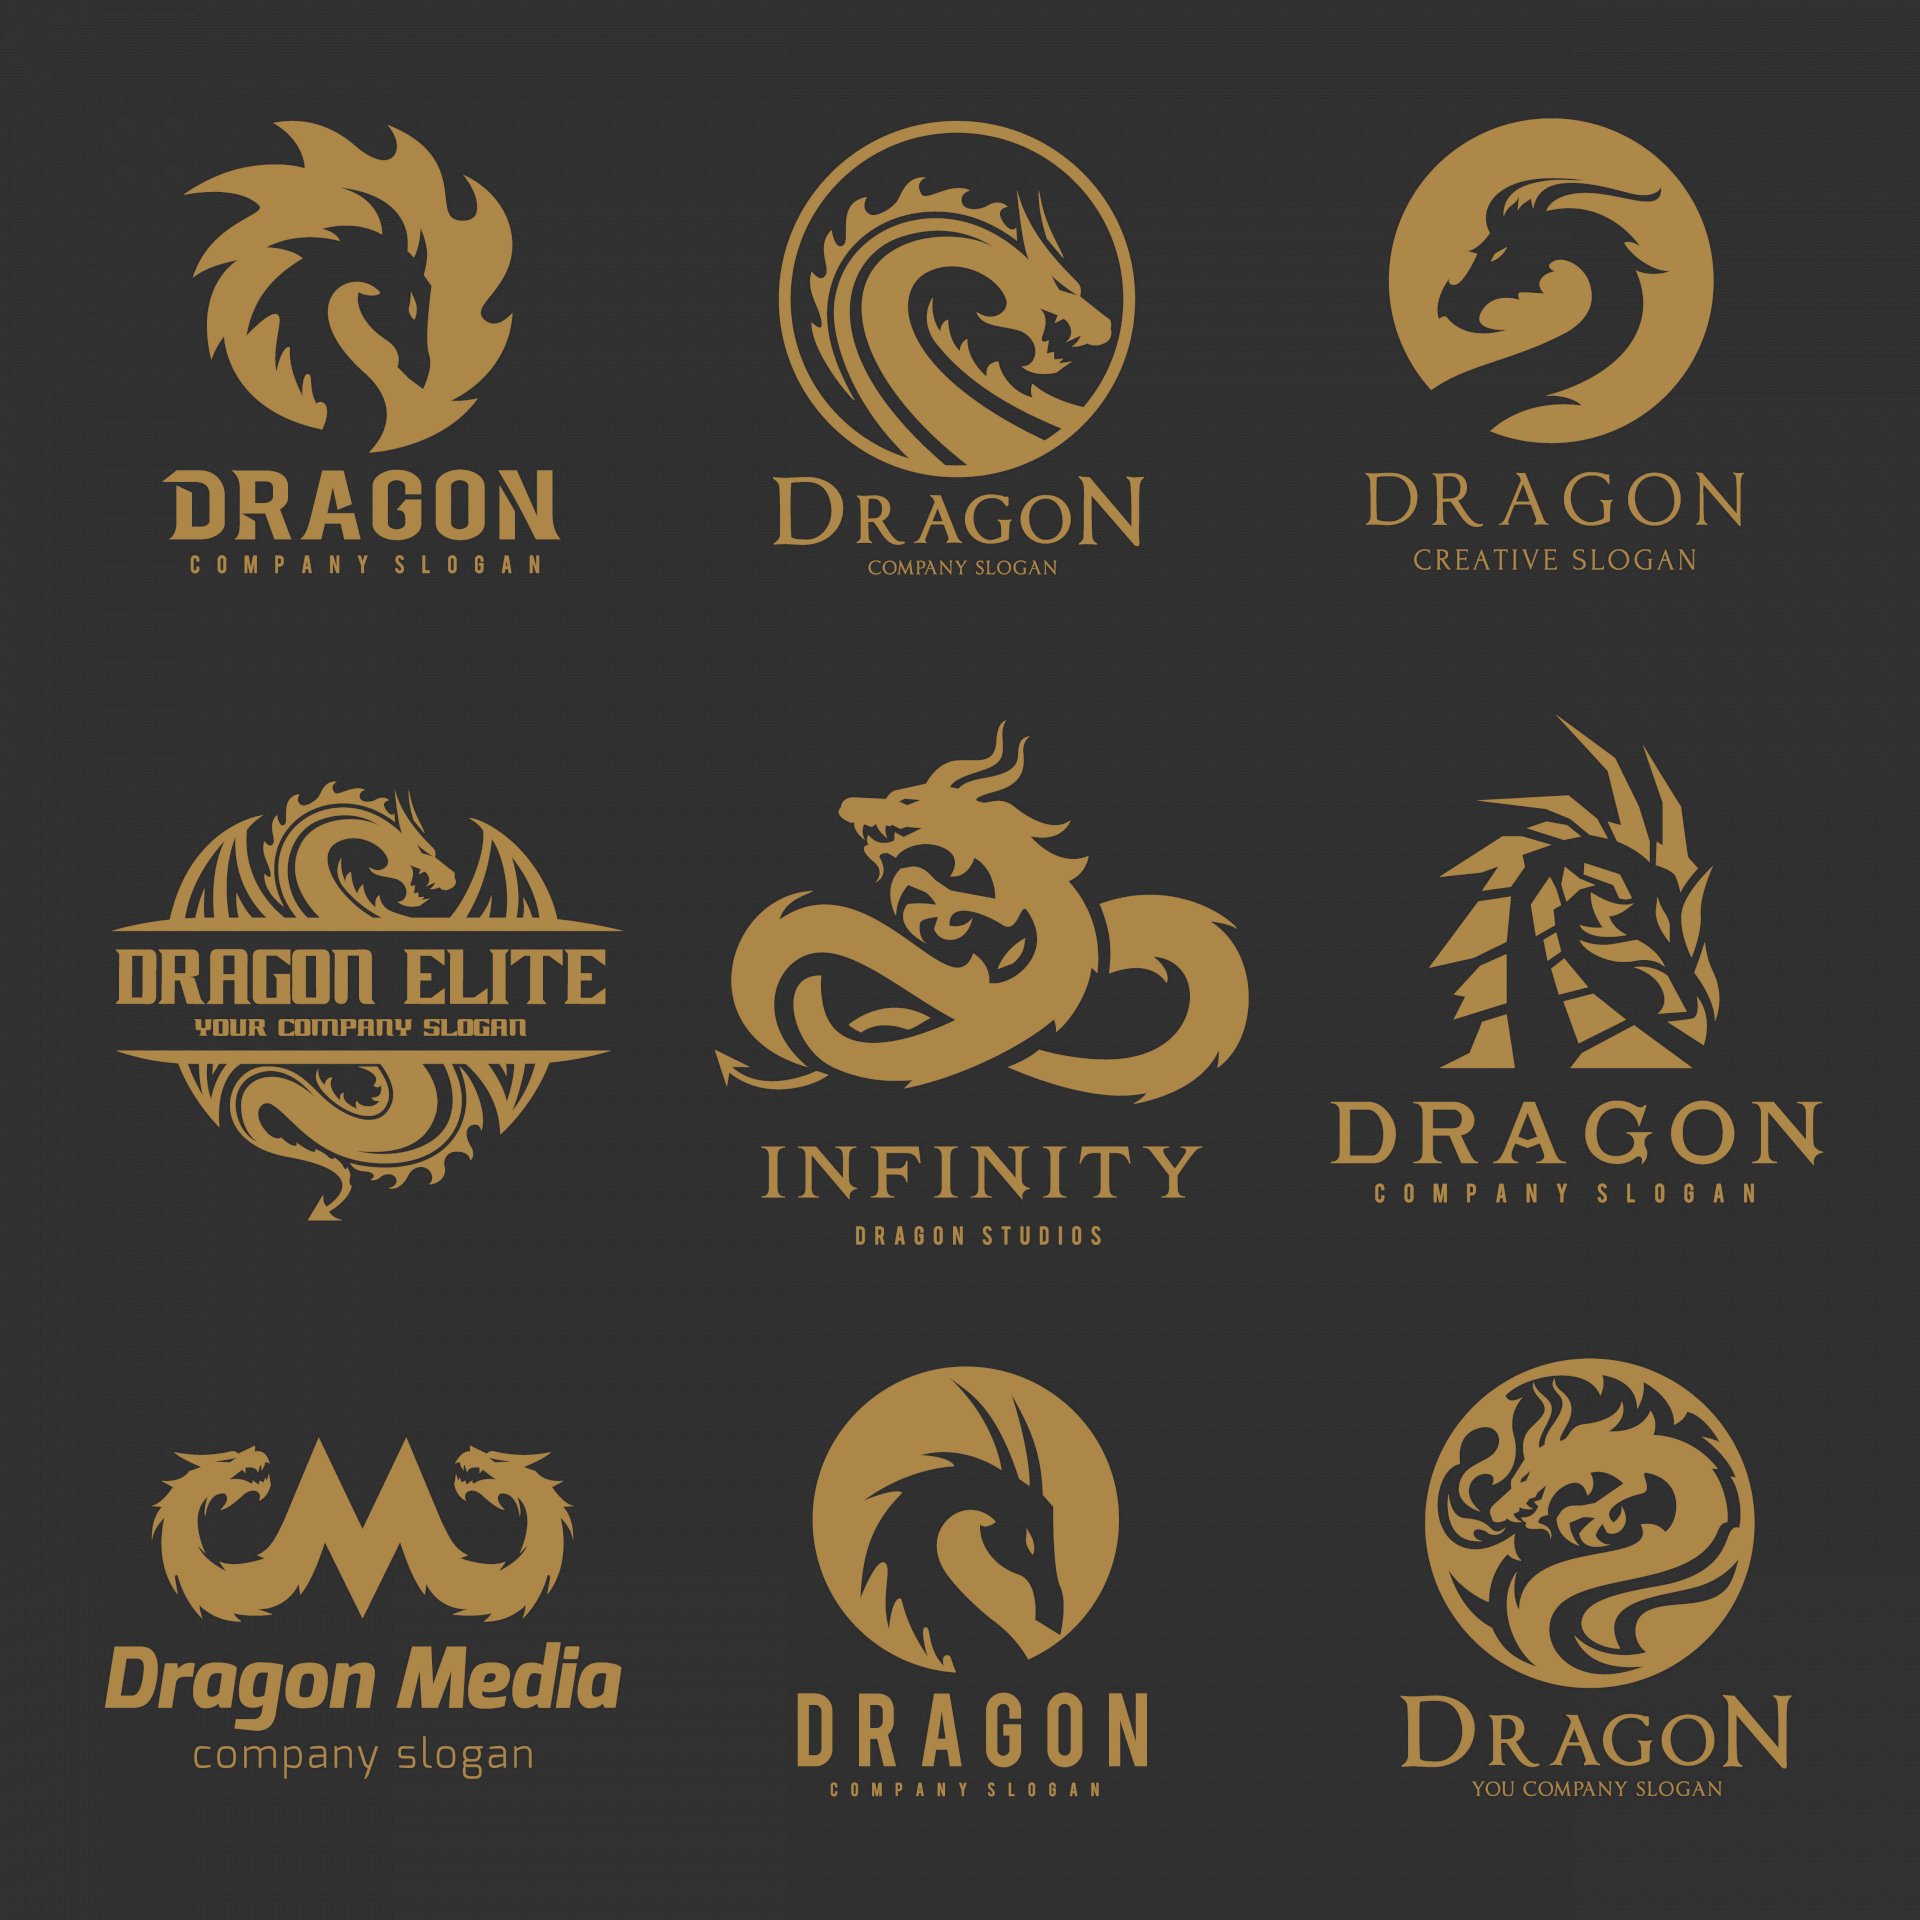 Logo rồng đậm chất nghệ thuật vẫn giữ được sự mạnh mẽ và đầy uy lực của loài rồng. Sự hòa quyện giữa hình ảnh và chữ viết tạo nên một thiết kế độc đáo và thể hiện được giá trị thương hiệu của bạn.